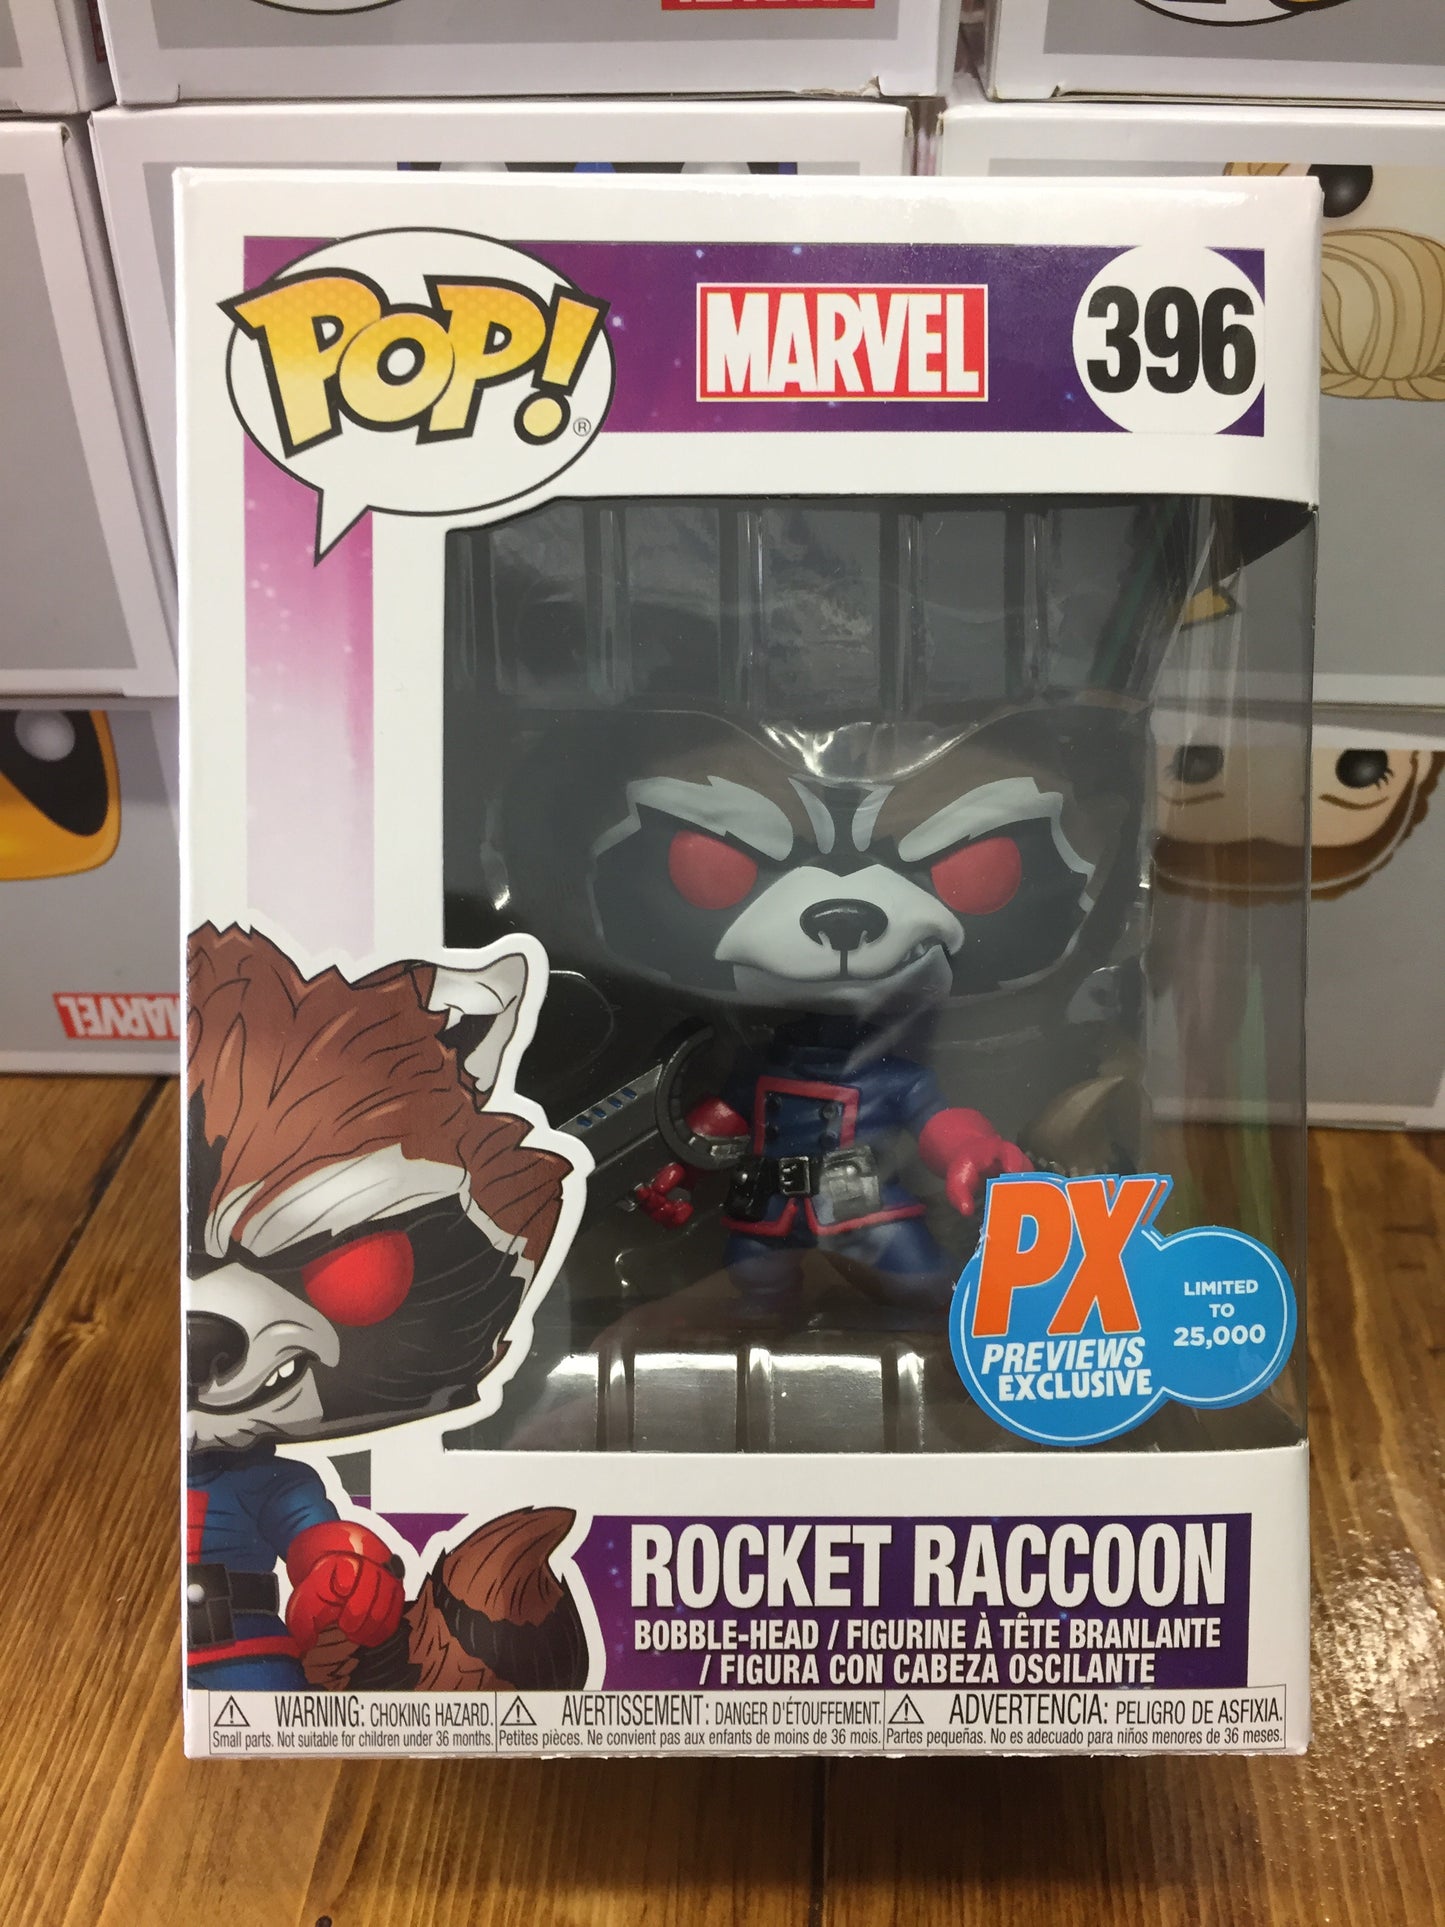 Marvel - Rocket Raccoon #396 - Exclusive Funko Pop Vinyl Figure